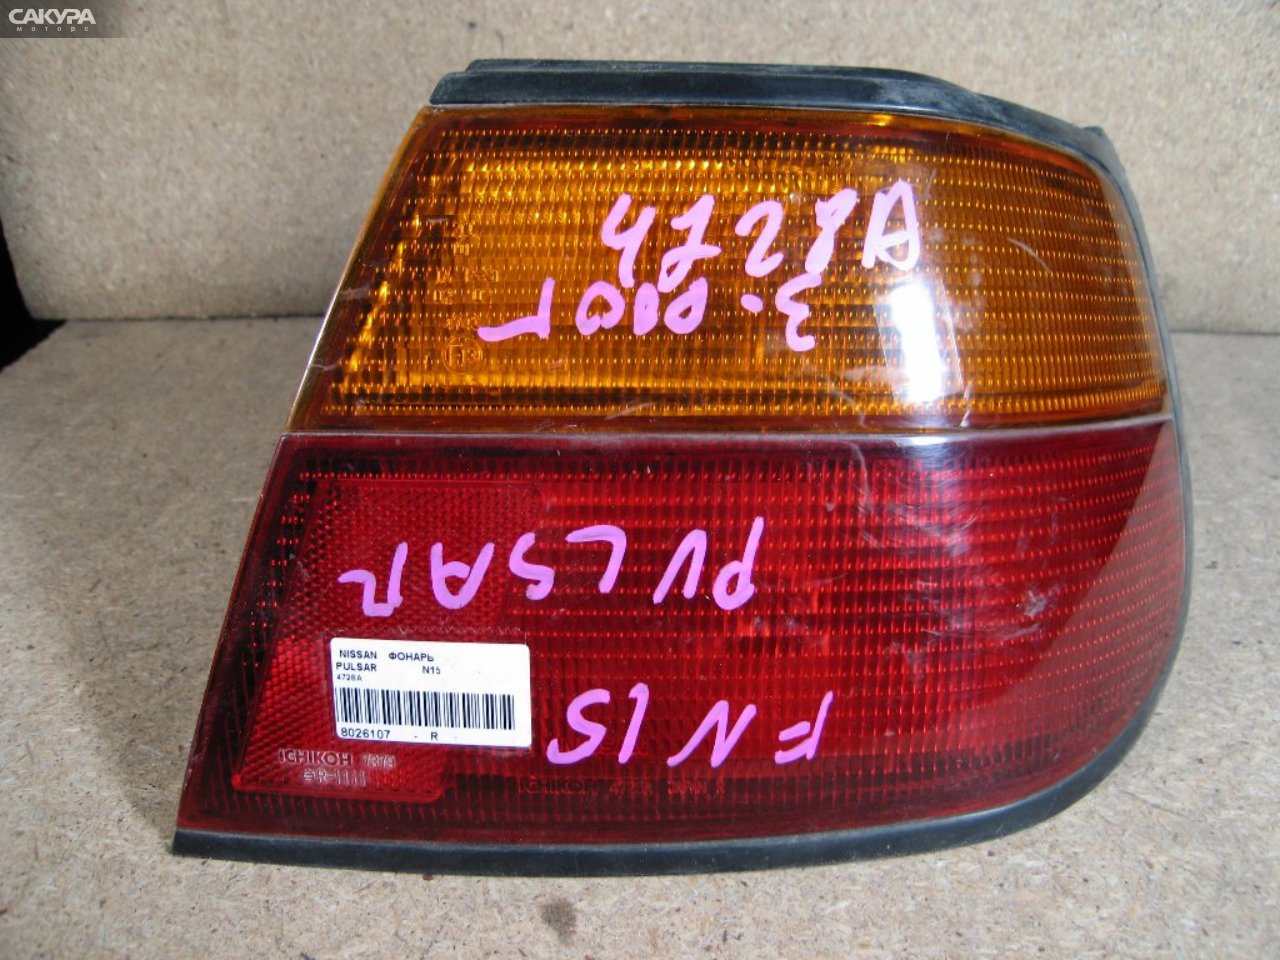 Фонарь стоп-сигнала правый Nissan Pulsar FN15 4728: купить в Сакура Абакан.